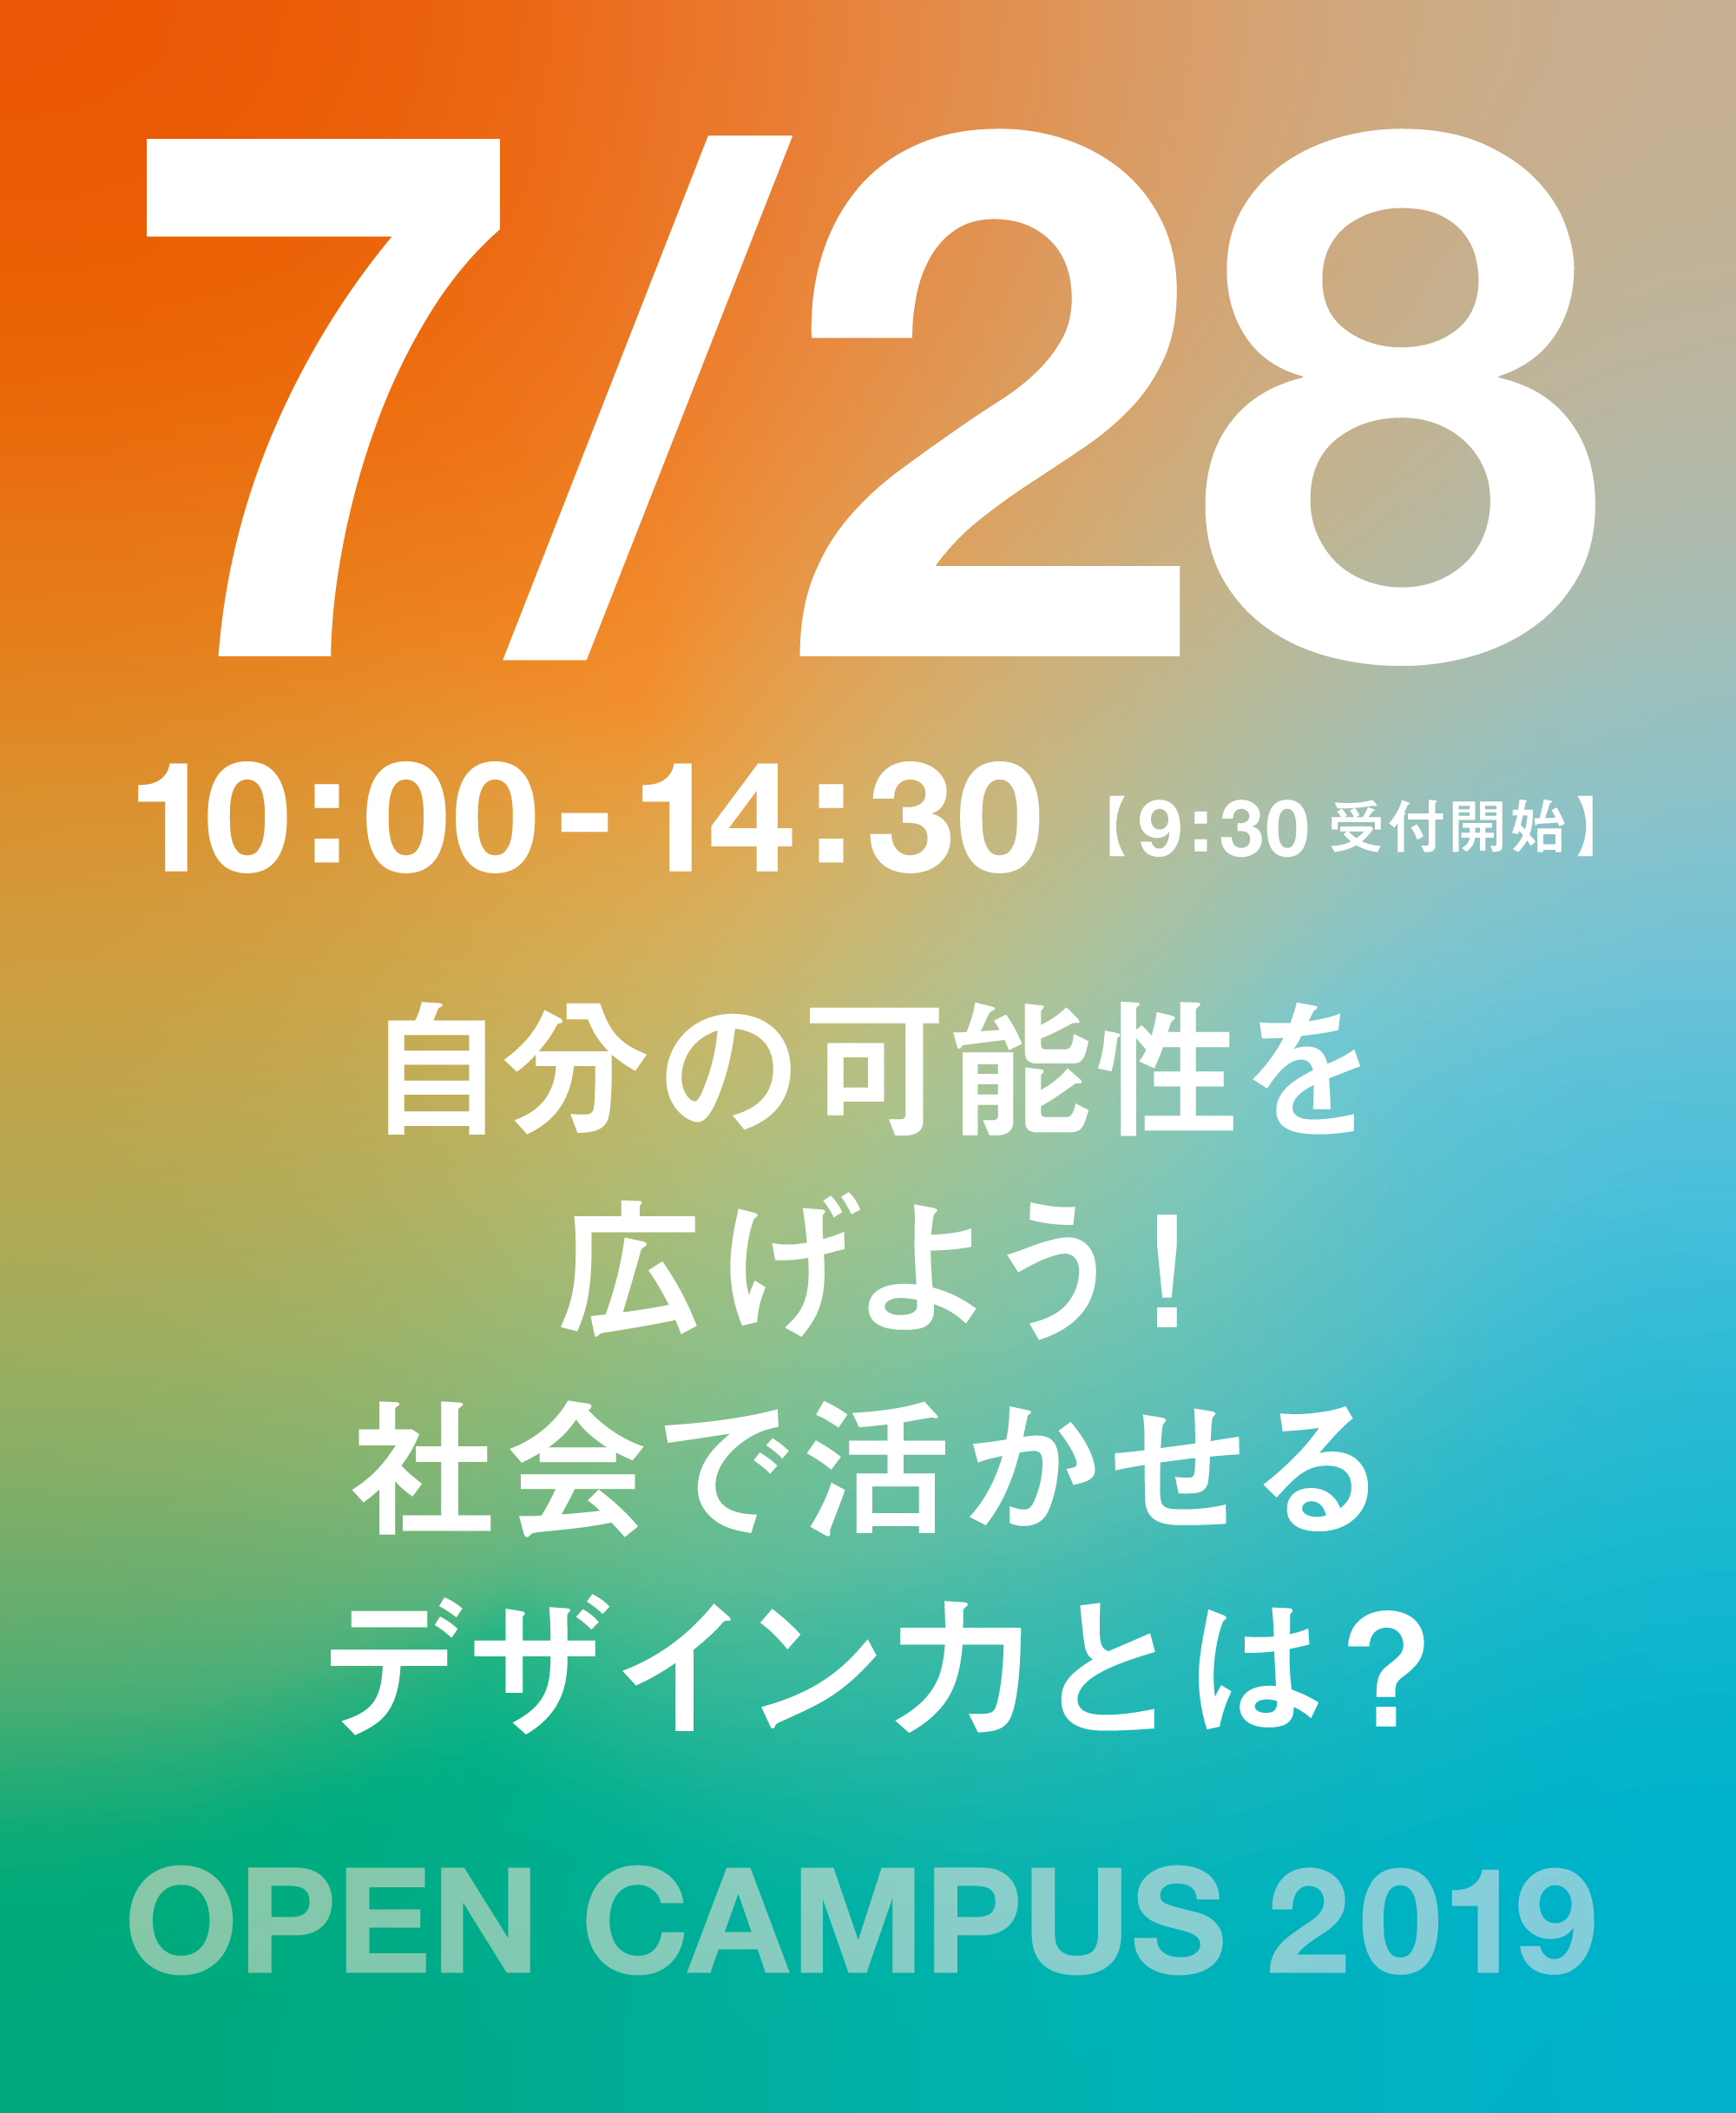 オープンキャンパスを開催します!!【7/28】